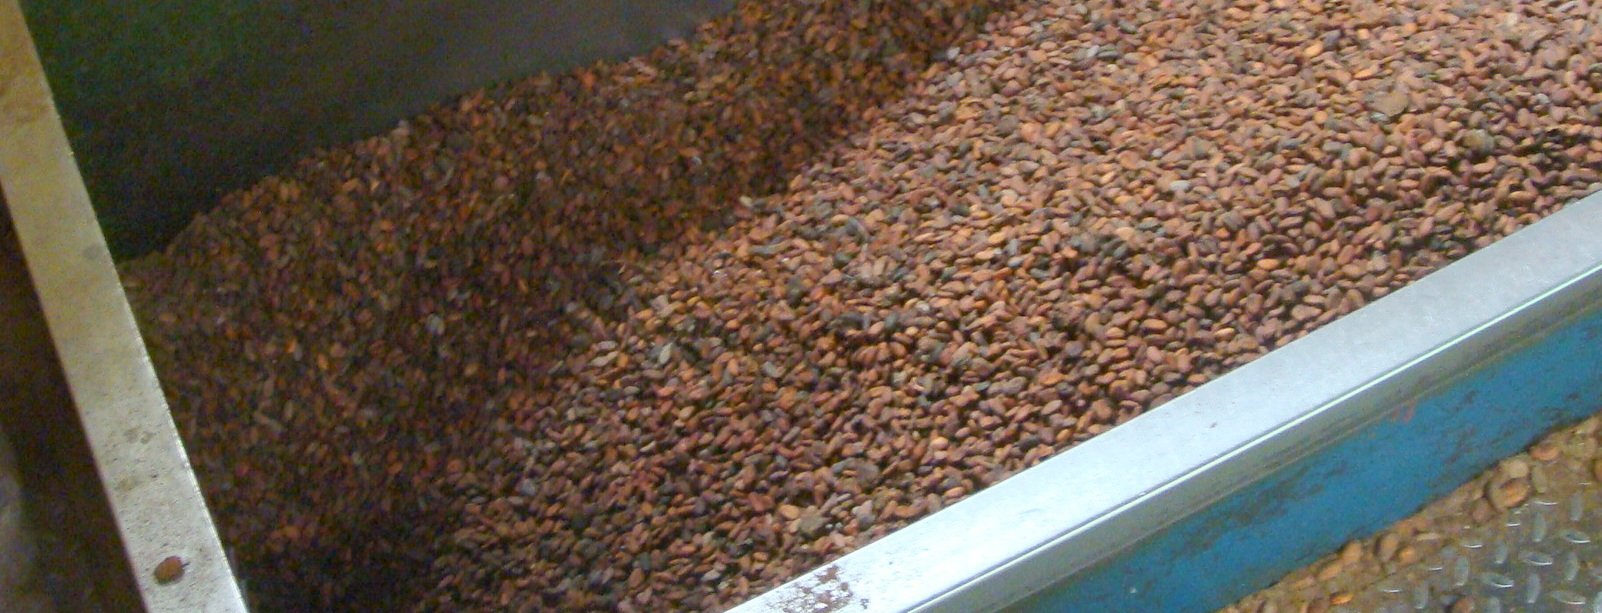 Cocoa processing-002